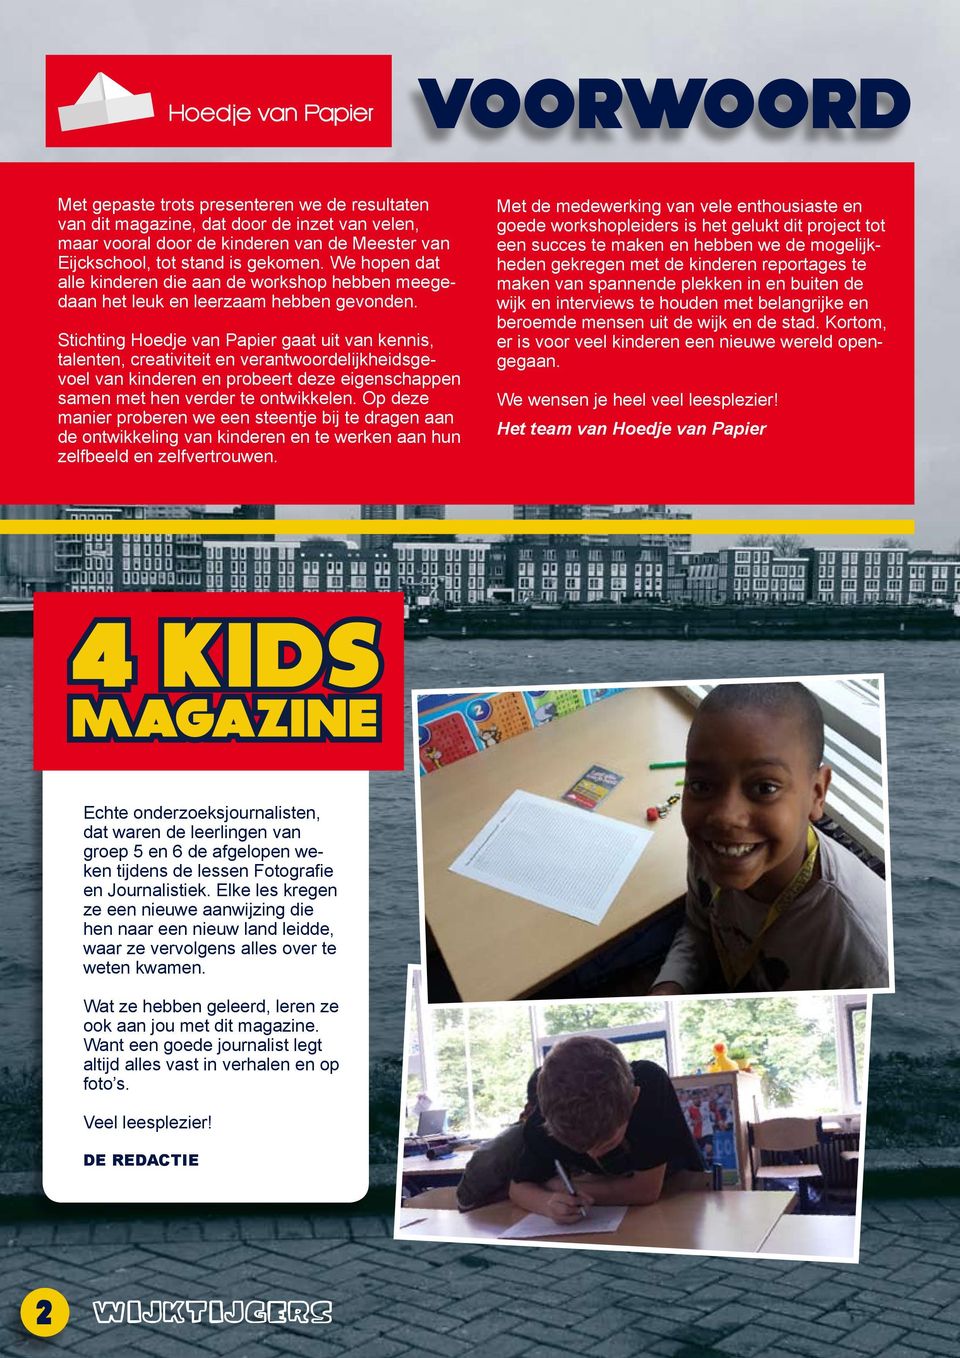 Stichting Hoedje van Papier gaat uit van kennis, talenten, creativiteit en verantwoordelijkheidsgevoel van kinderen en probeert deze eigenschappen samen met hen verder te ontwikkelen.